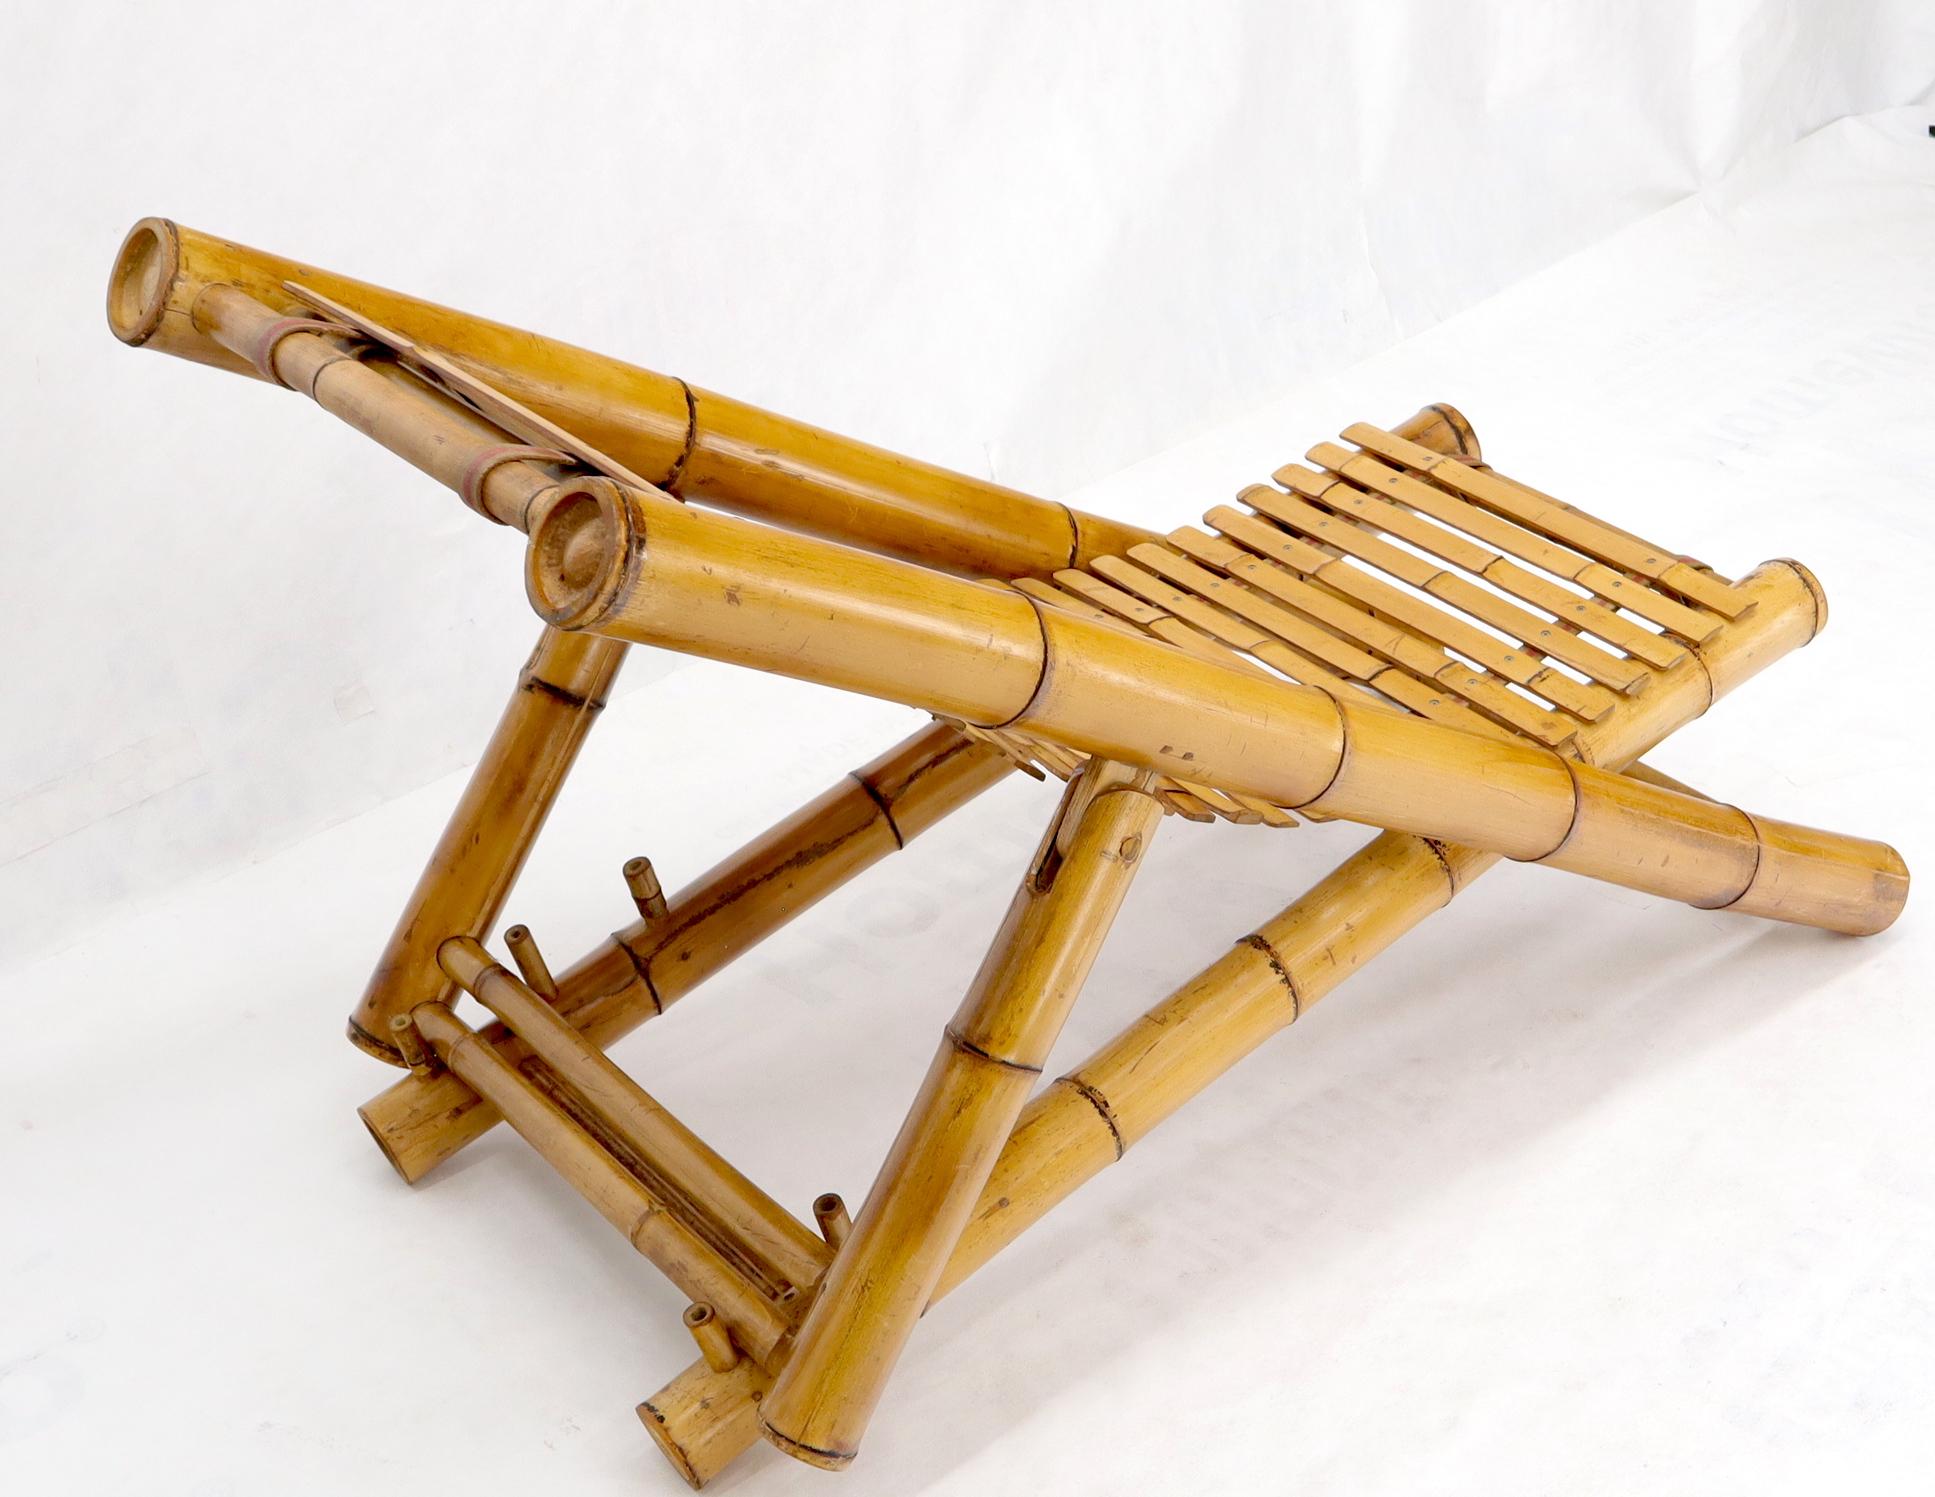 bamboo beach chair